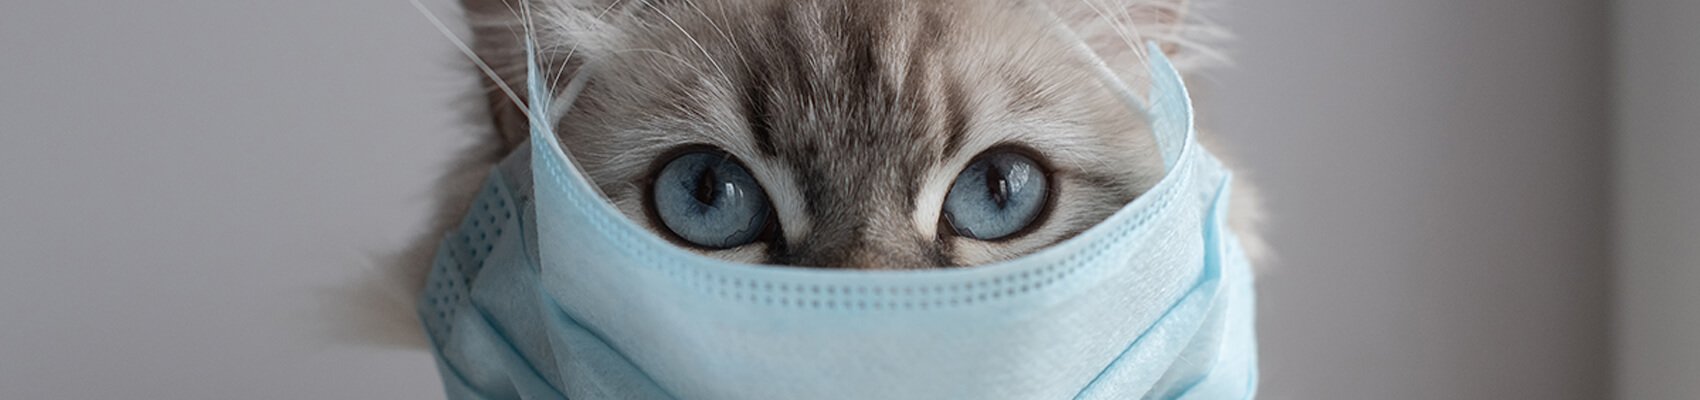 gato gripado destaque